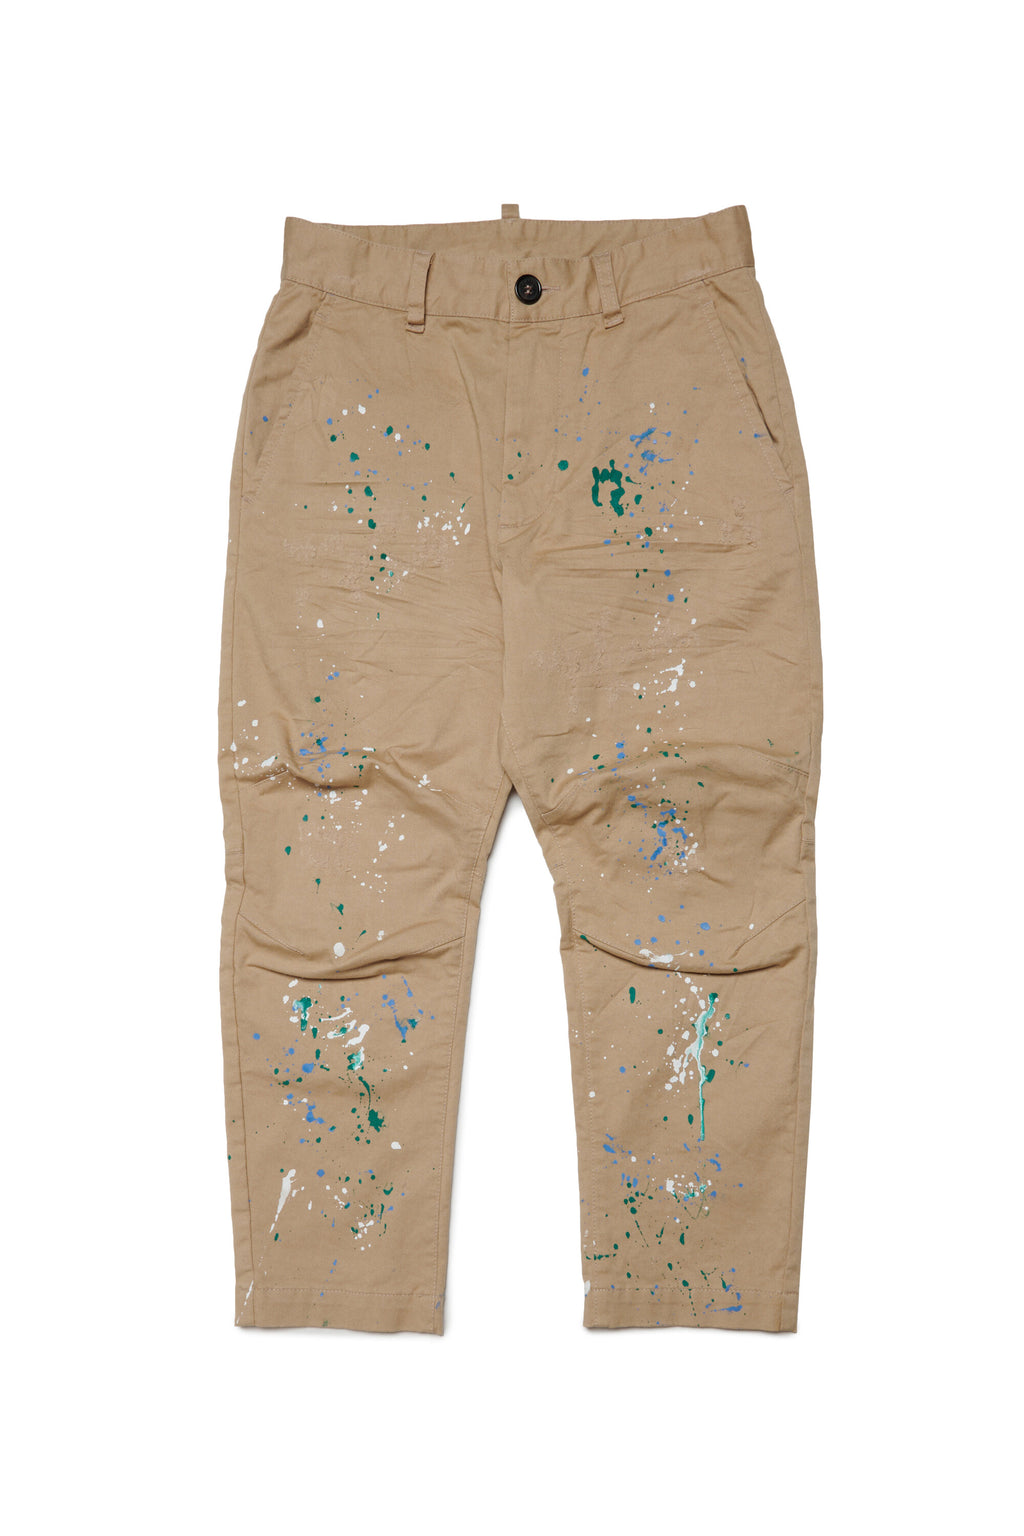 Pantalones chinos con salpicaduras de pintura